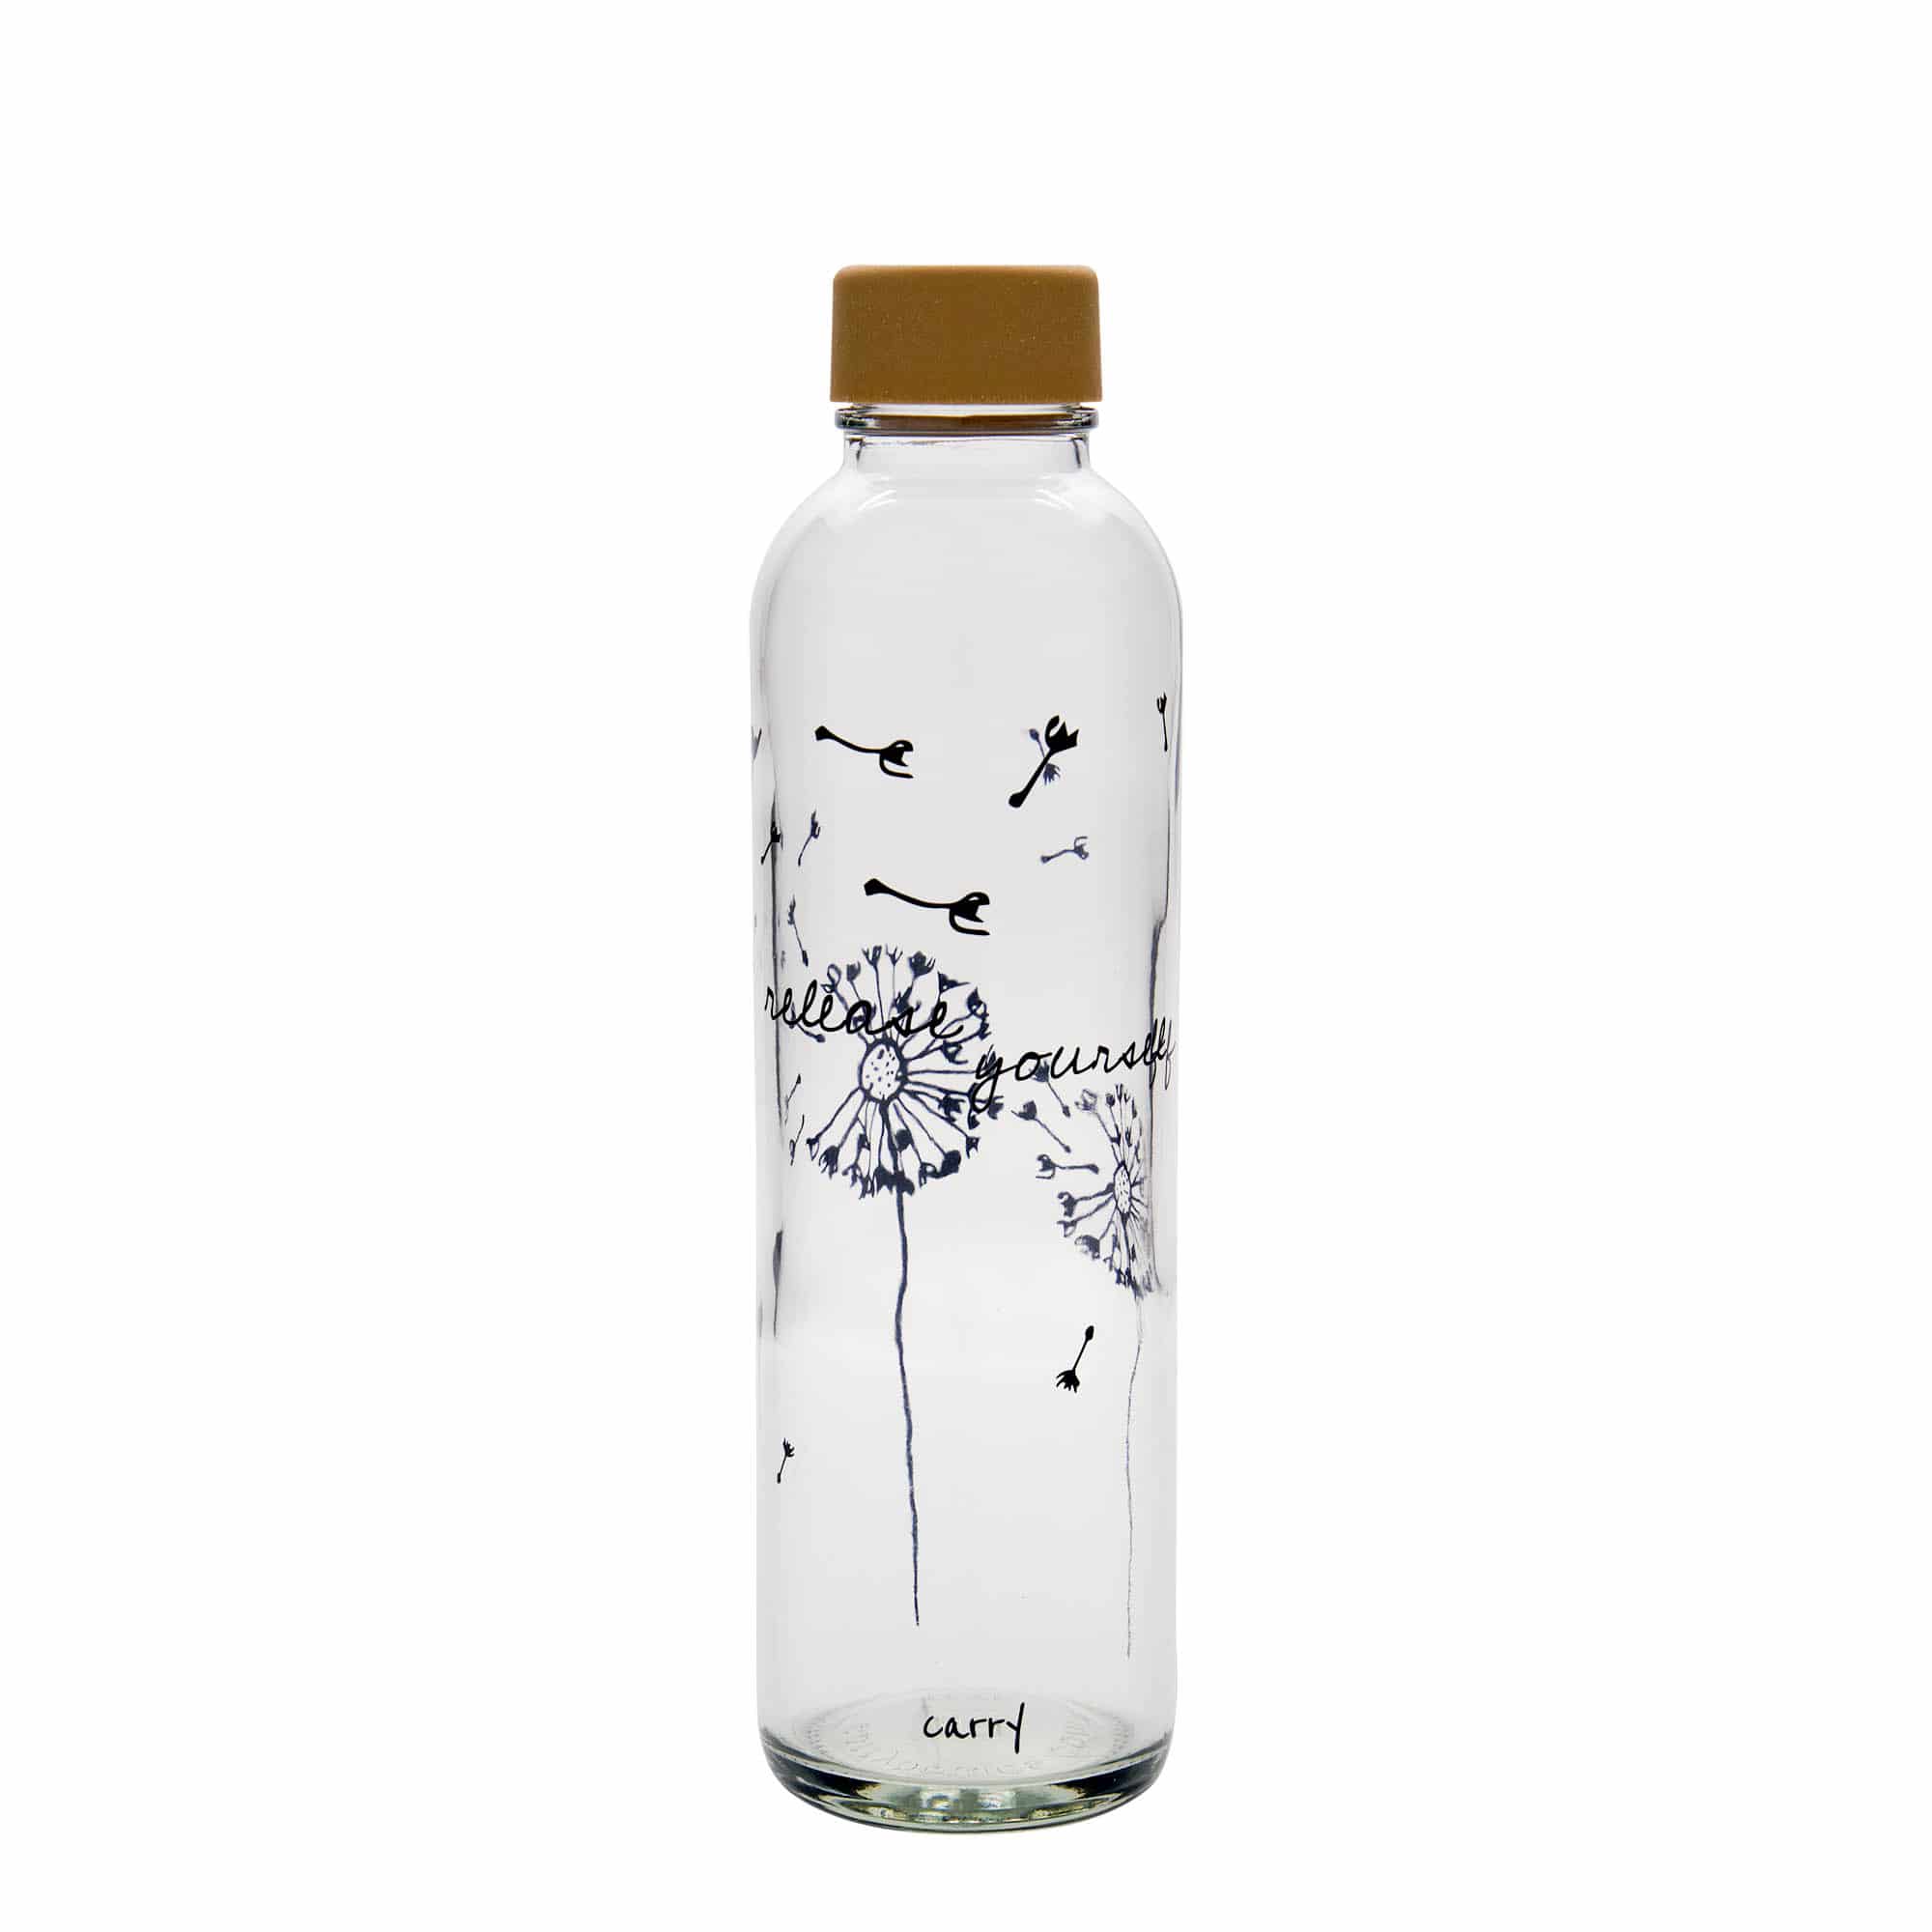 700 ml-es ivópalack CARRY Bottle, motívum: Release Yourself, szájnyílás: csavaros kupak